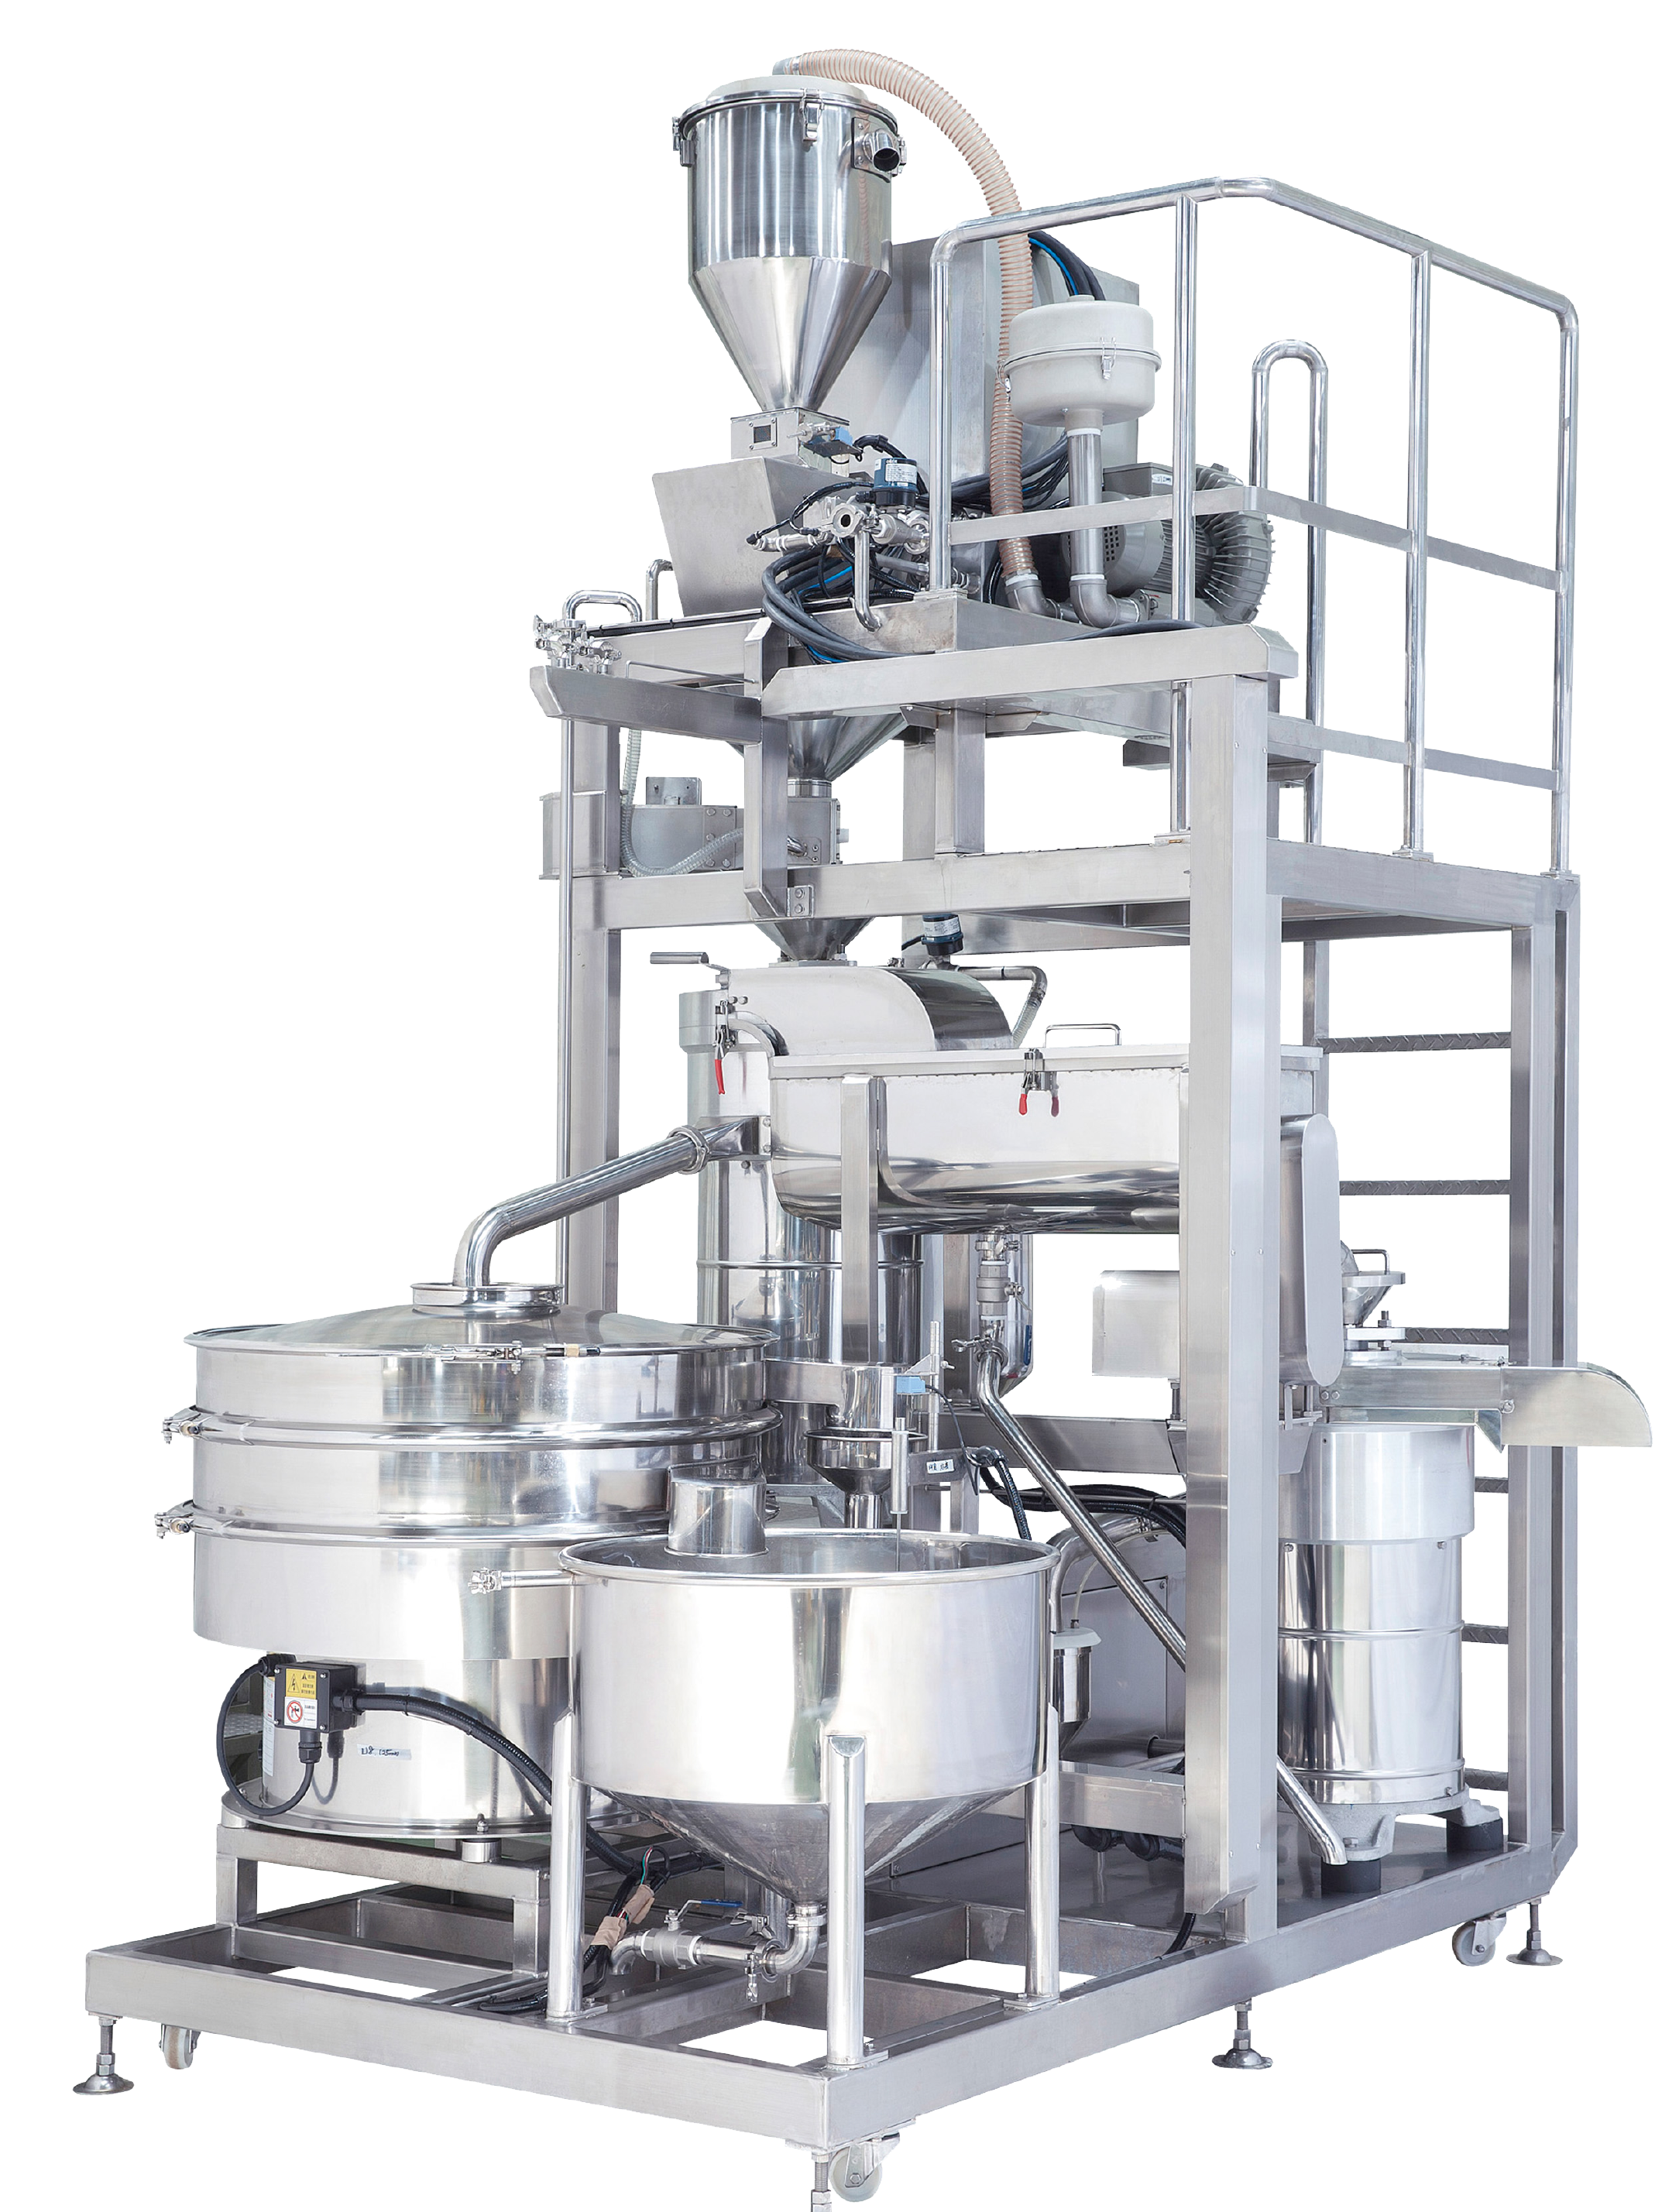 当社の豆腐の製造ラインは、粉砕機、脱脂機、パルプ化機を含めてすべて自動化されており、すべてマンマシンインターフェースで操作されます。